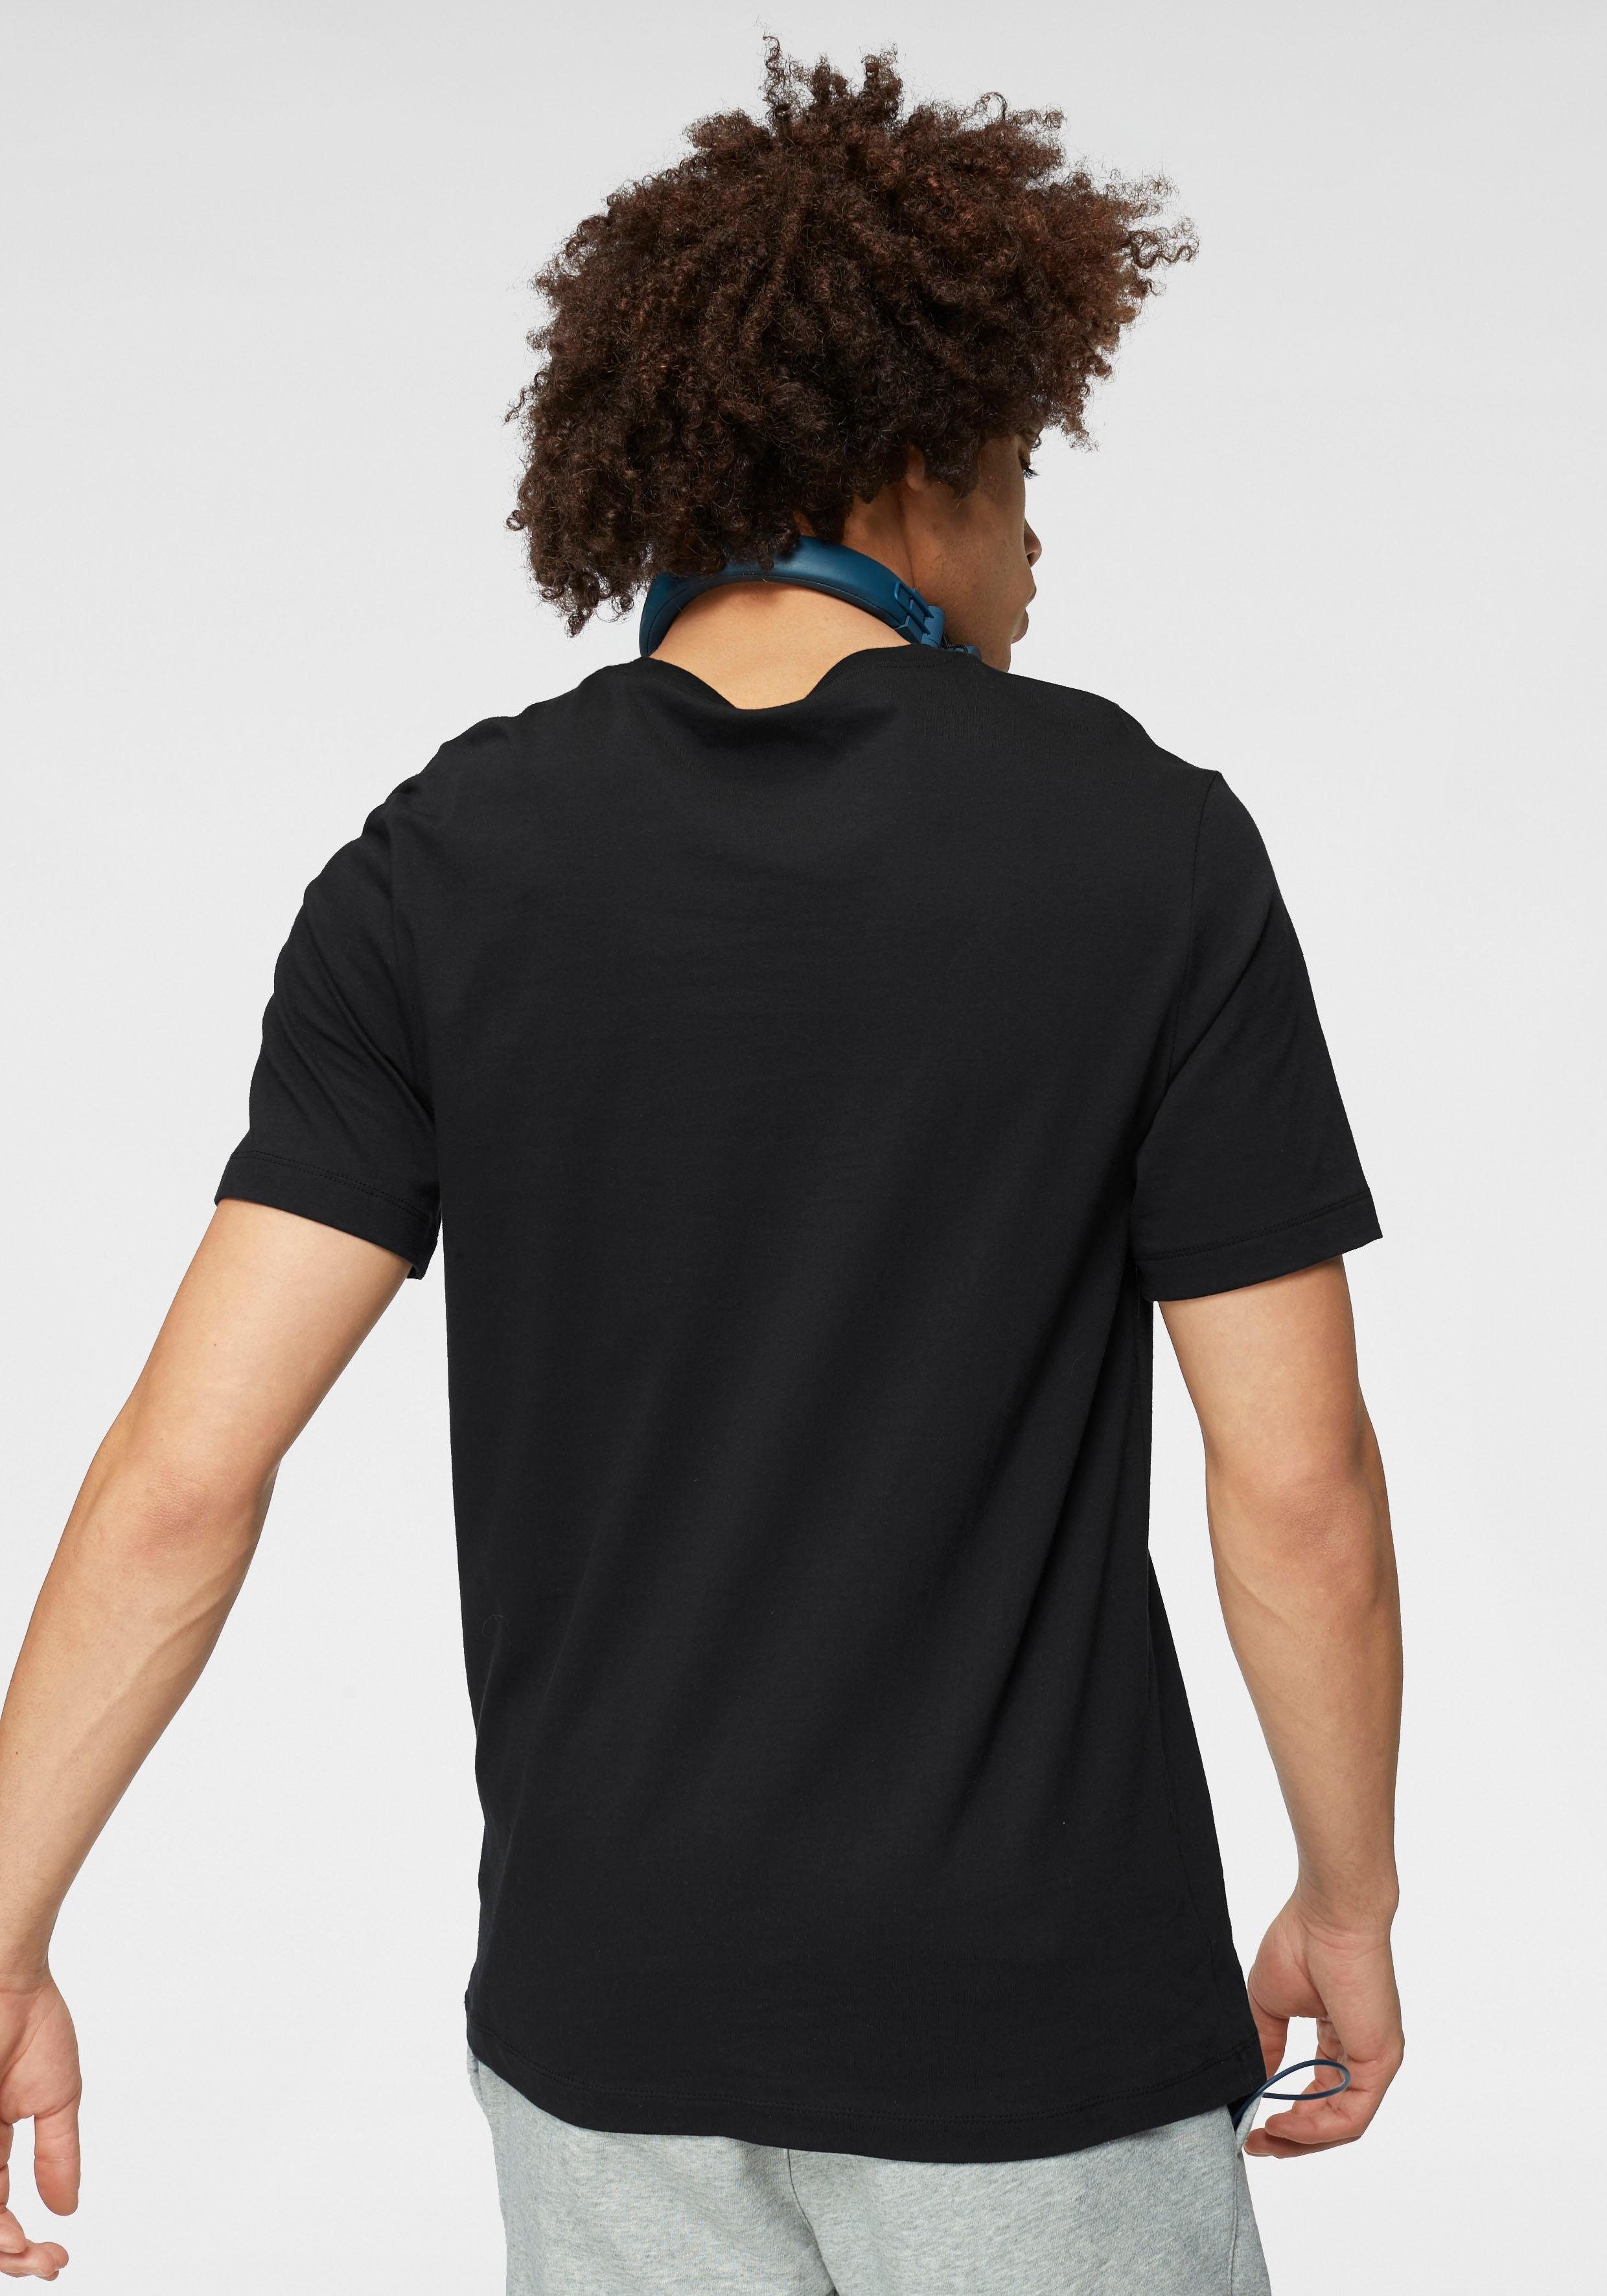 MEN'S Sportswear T-SHIRT Nike CLUB schwarz T-Shirt